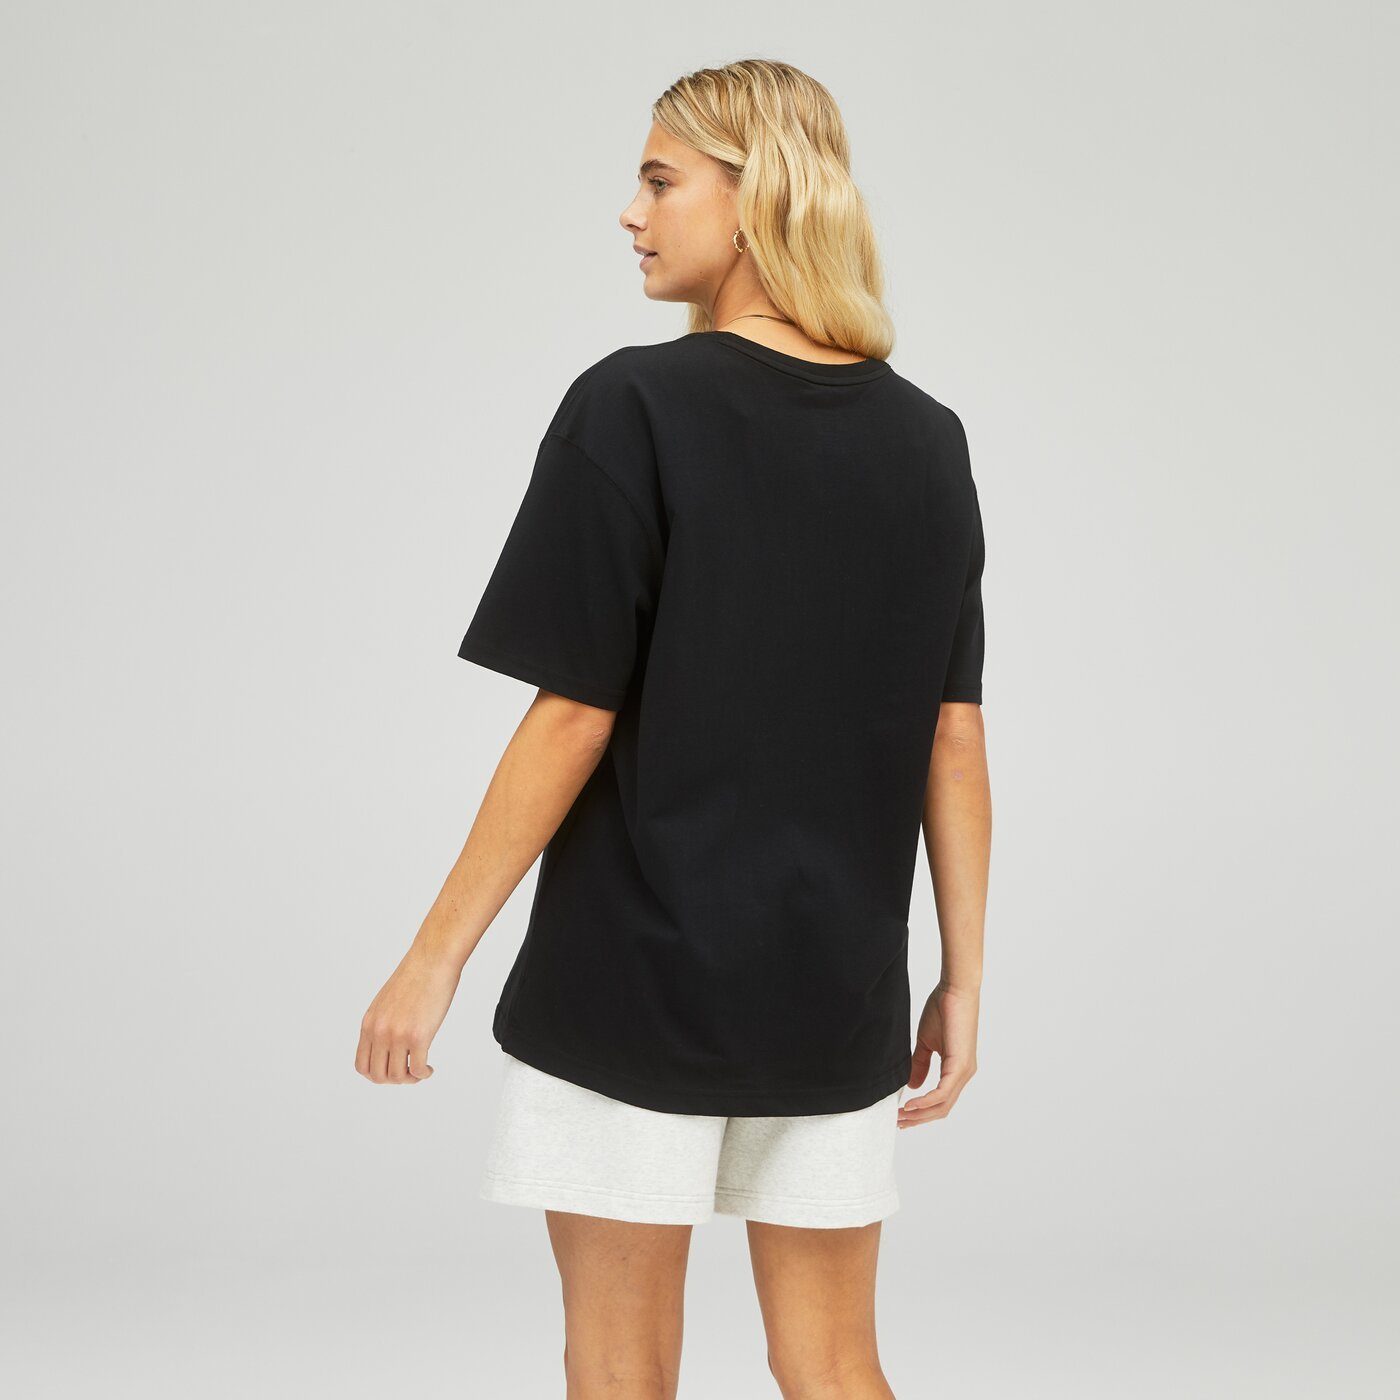 New Balance Kurzarmshirt Uni-ssentials Cotton BK T-Shirt